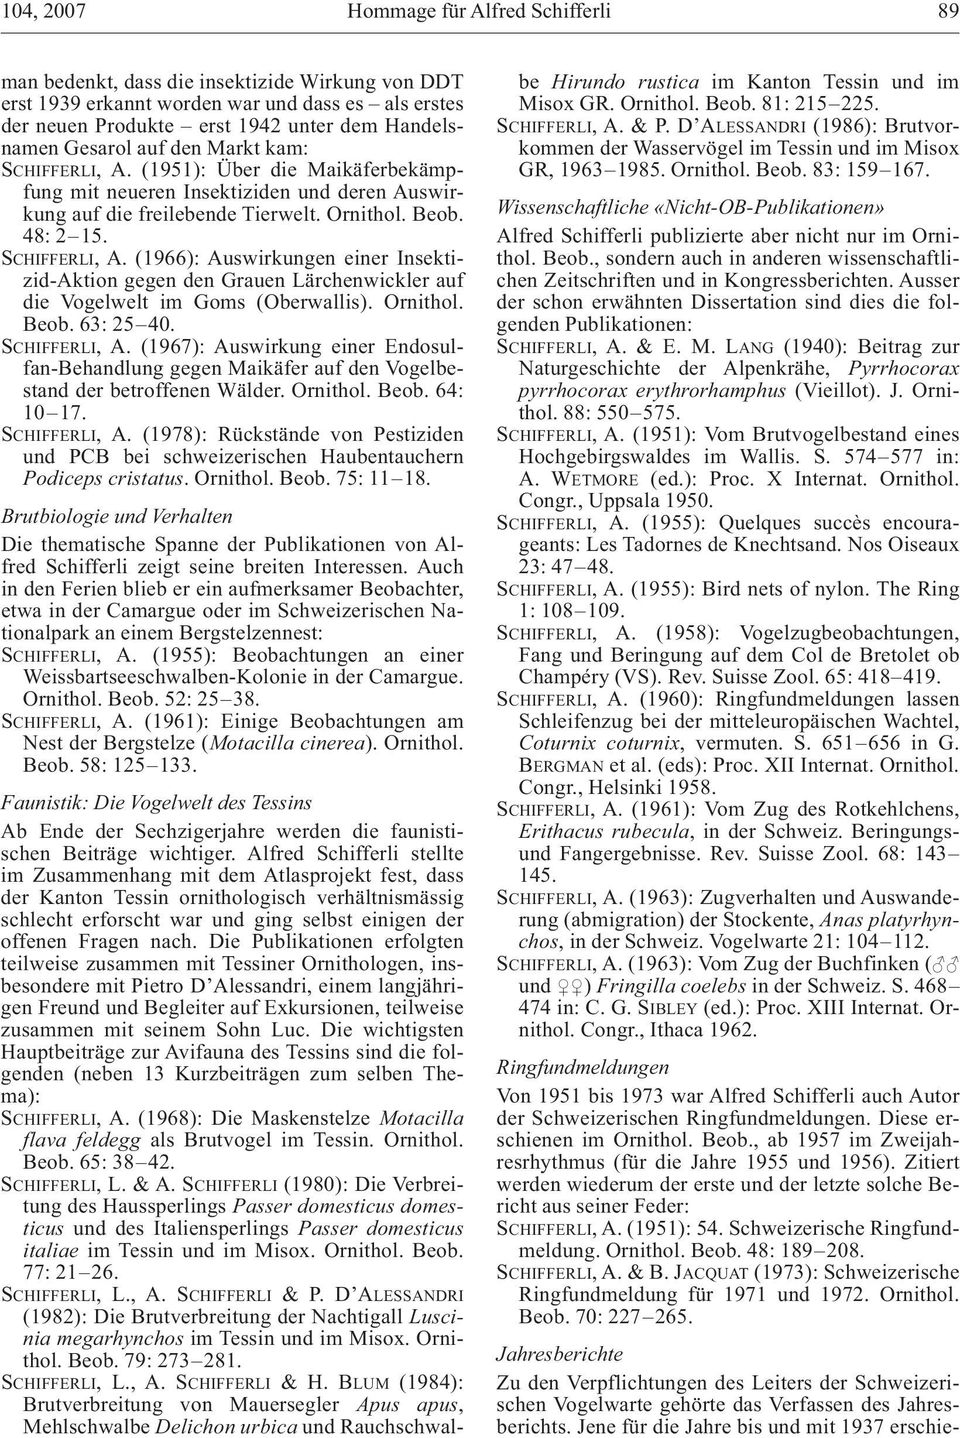 Ornithol. Beob. 63: 25 40. SCHIFFERLI, A. (1967): Auswirkung einer Endosulfan-Behandlung gegen Maikäfer auf den Vogelbestand der betroffenen Wälder. Ornithol. Beob. 64: 10 17. SCHIFFERLI, A. (1978): Rückstände von Pestiziden und PCB bei schweizerischen Haubentauchern Podiceps cristatus.